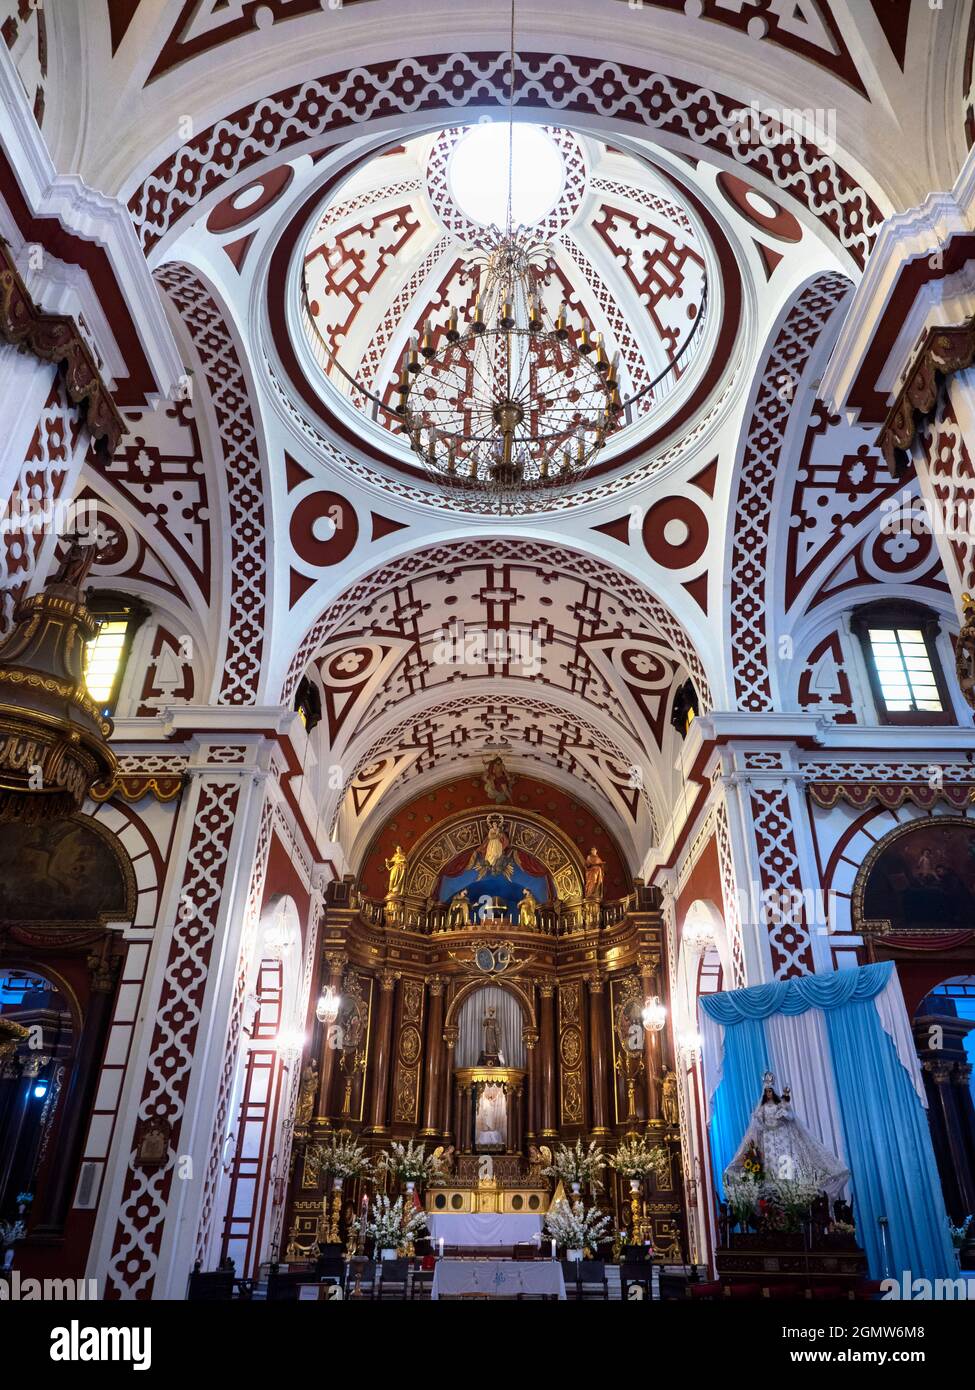 Lima, Pérou - 10 mai 2018 la basilique et le couvent de Saint François est un monument historique de Lima, Pérou. Construit en 1673, il a survécu jusqu'à présent à plusieurs ea Banque D'Images